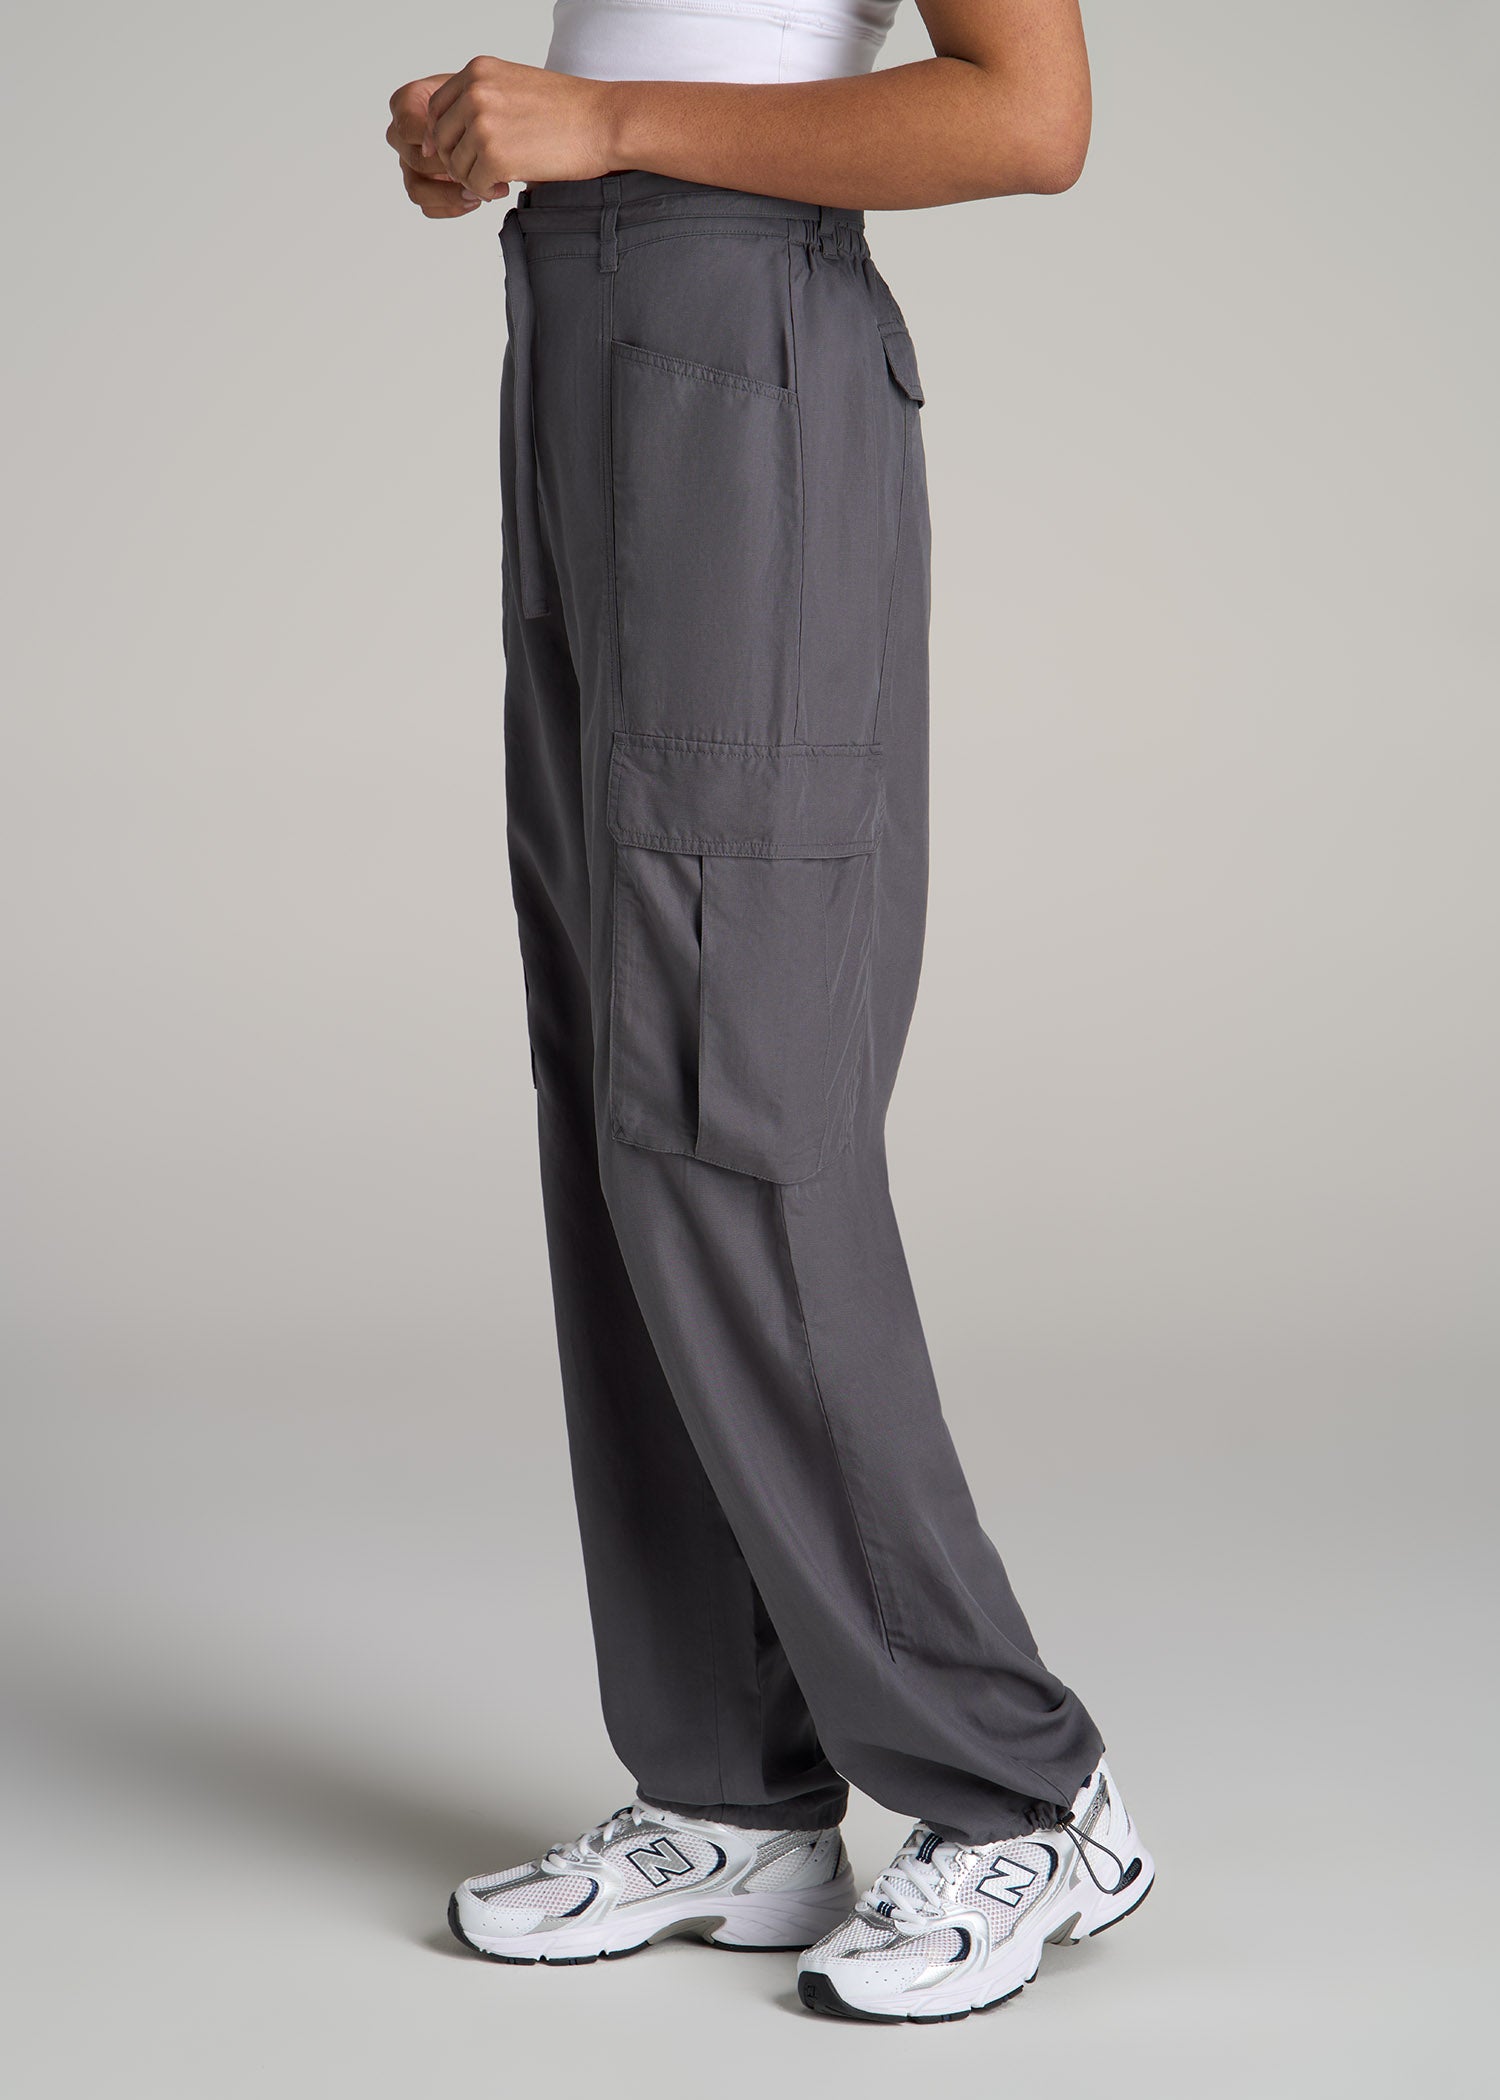 parachute pants - Parachute Pants for women - women's cargos pant